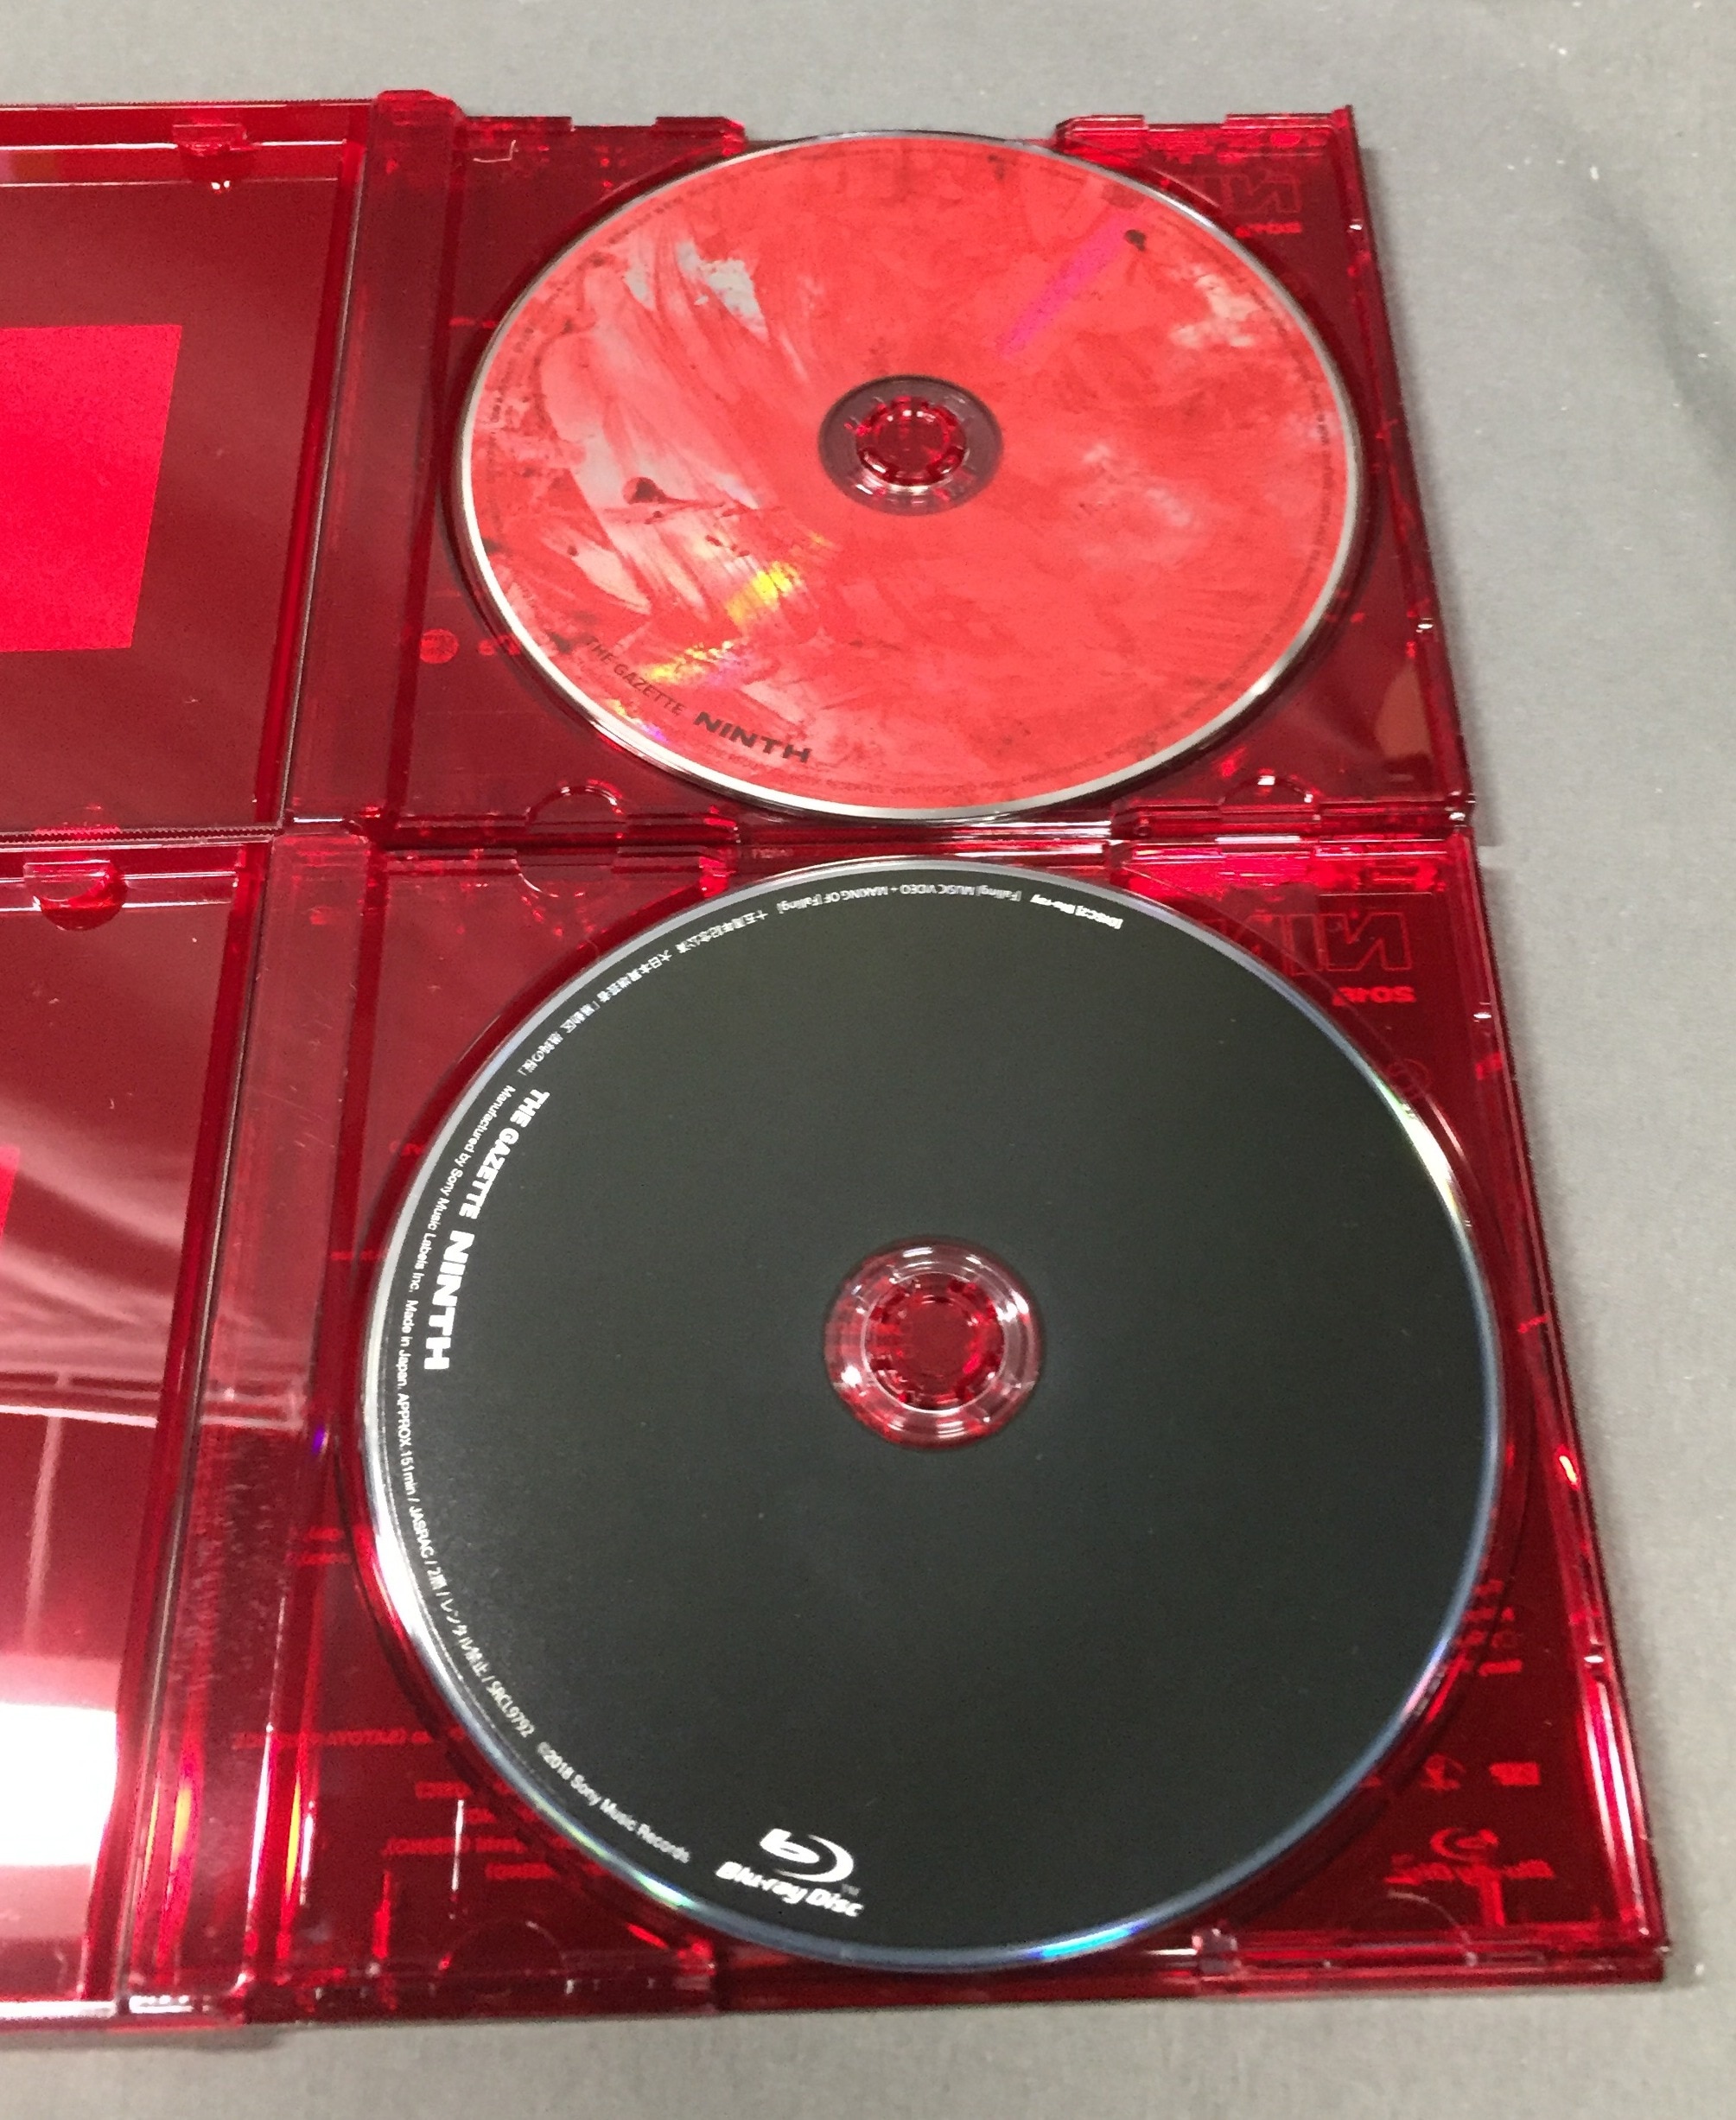 the GazettE NINTH 完全生産限定盤(CD＋Blu-ray)未開封 - CD